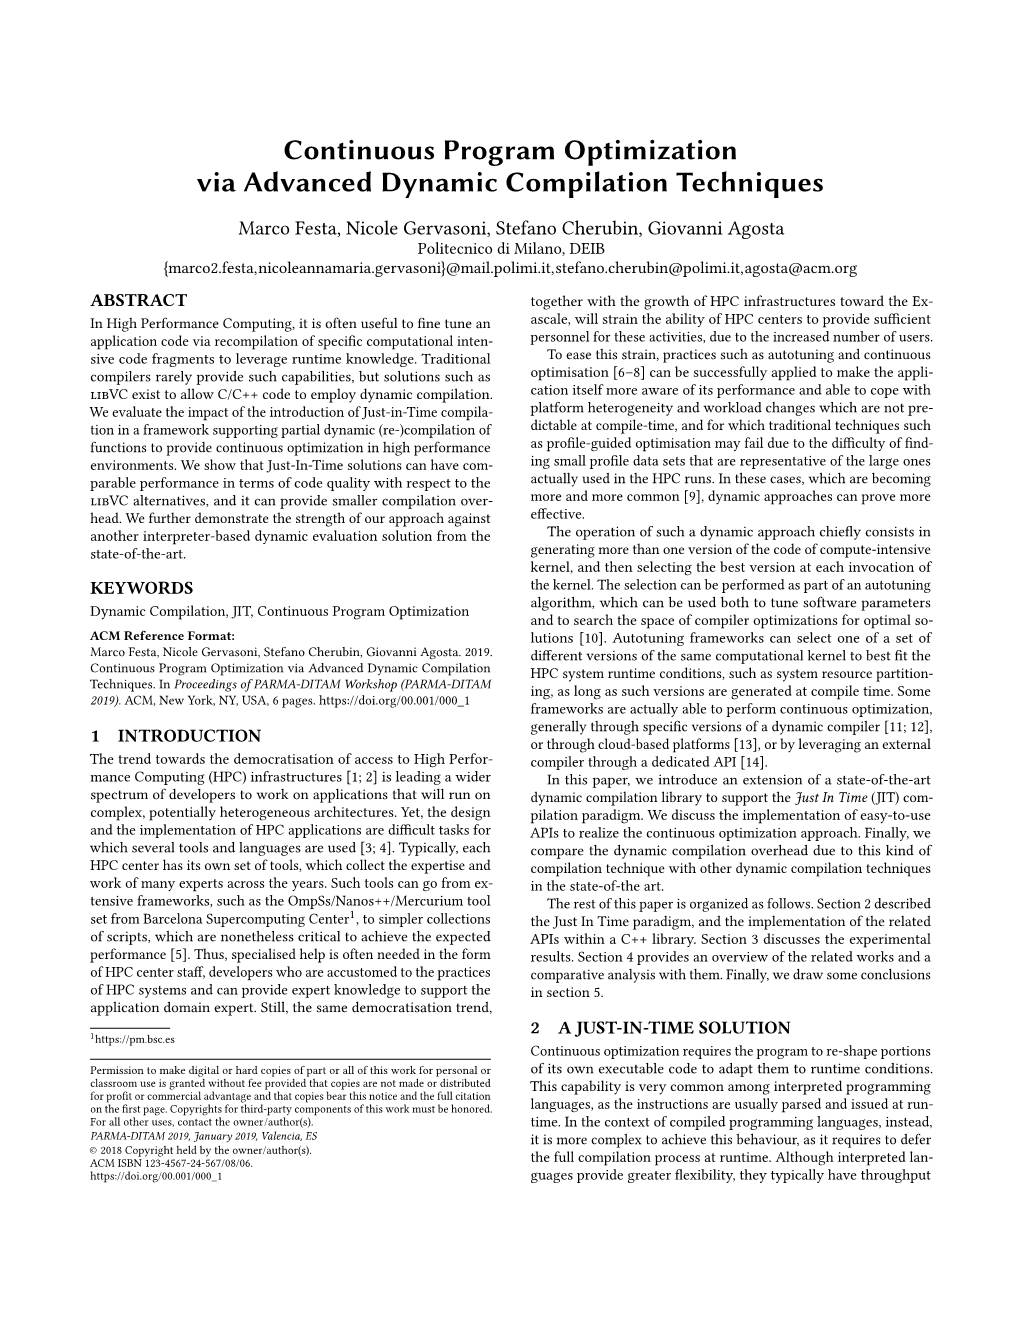 Continuous Program Optimization Via Advanced Dynamic Compilation Techniques